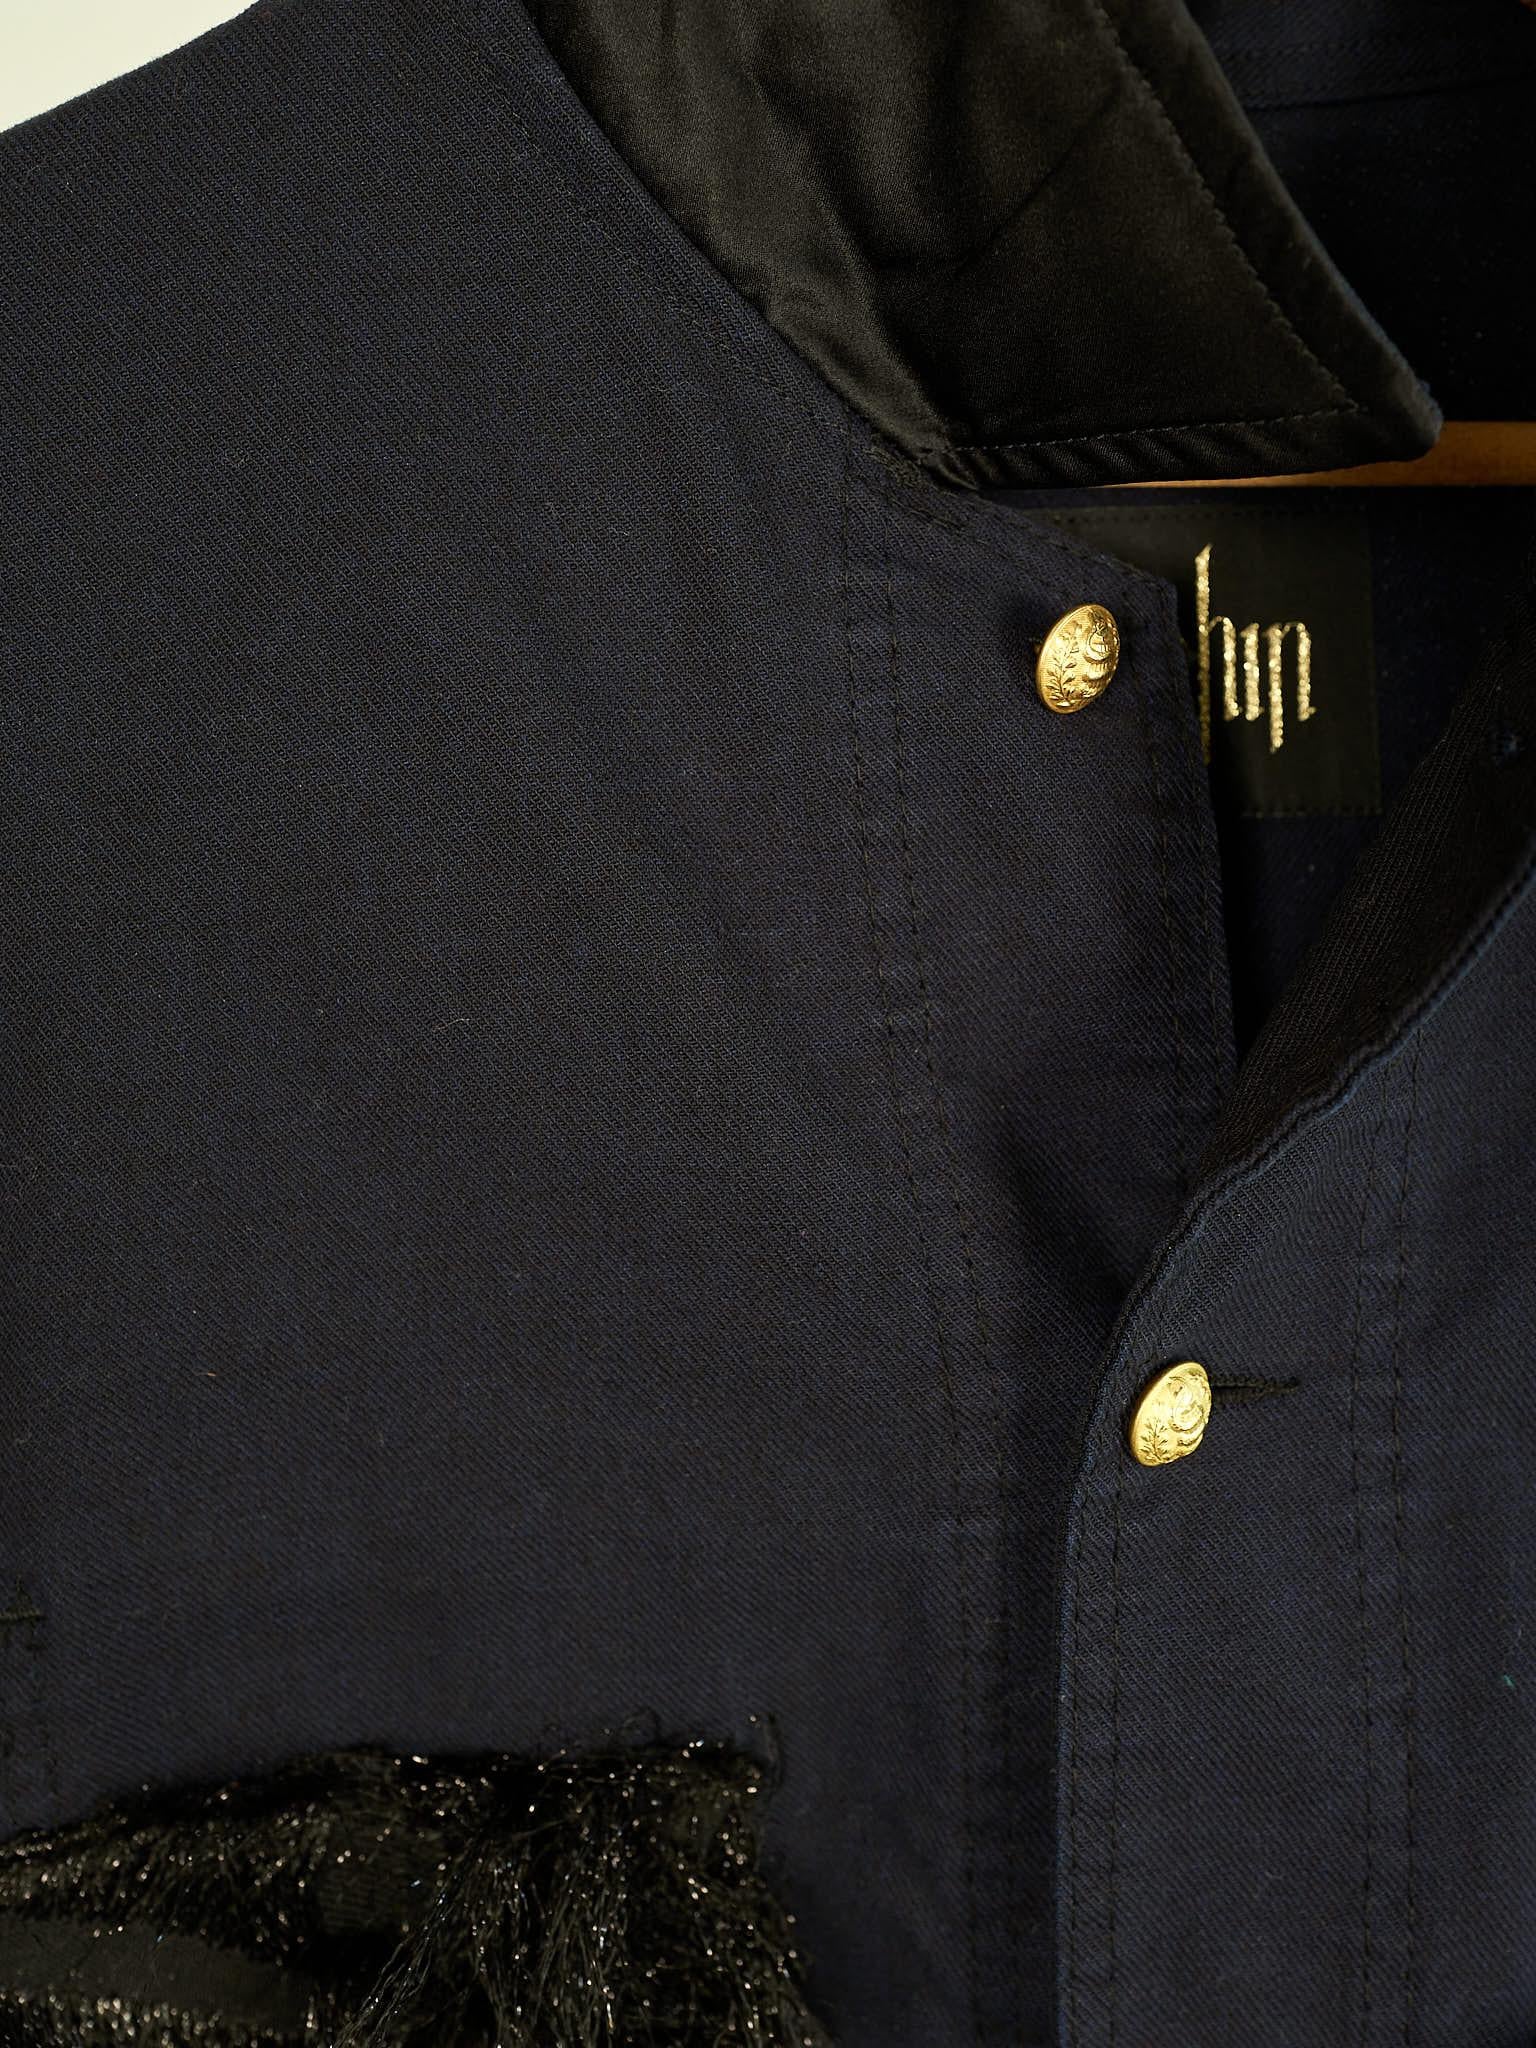 Fringe Tweed Jacket French Work Repurposed Vintage Dark Blue  J Dauphin 1